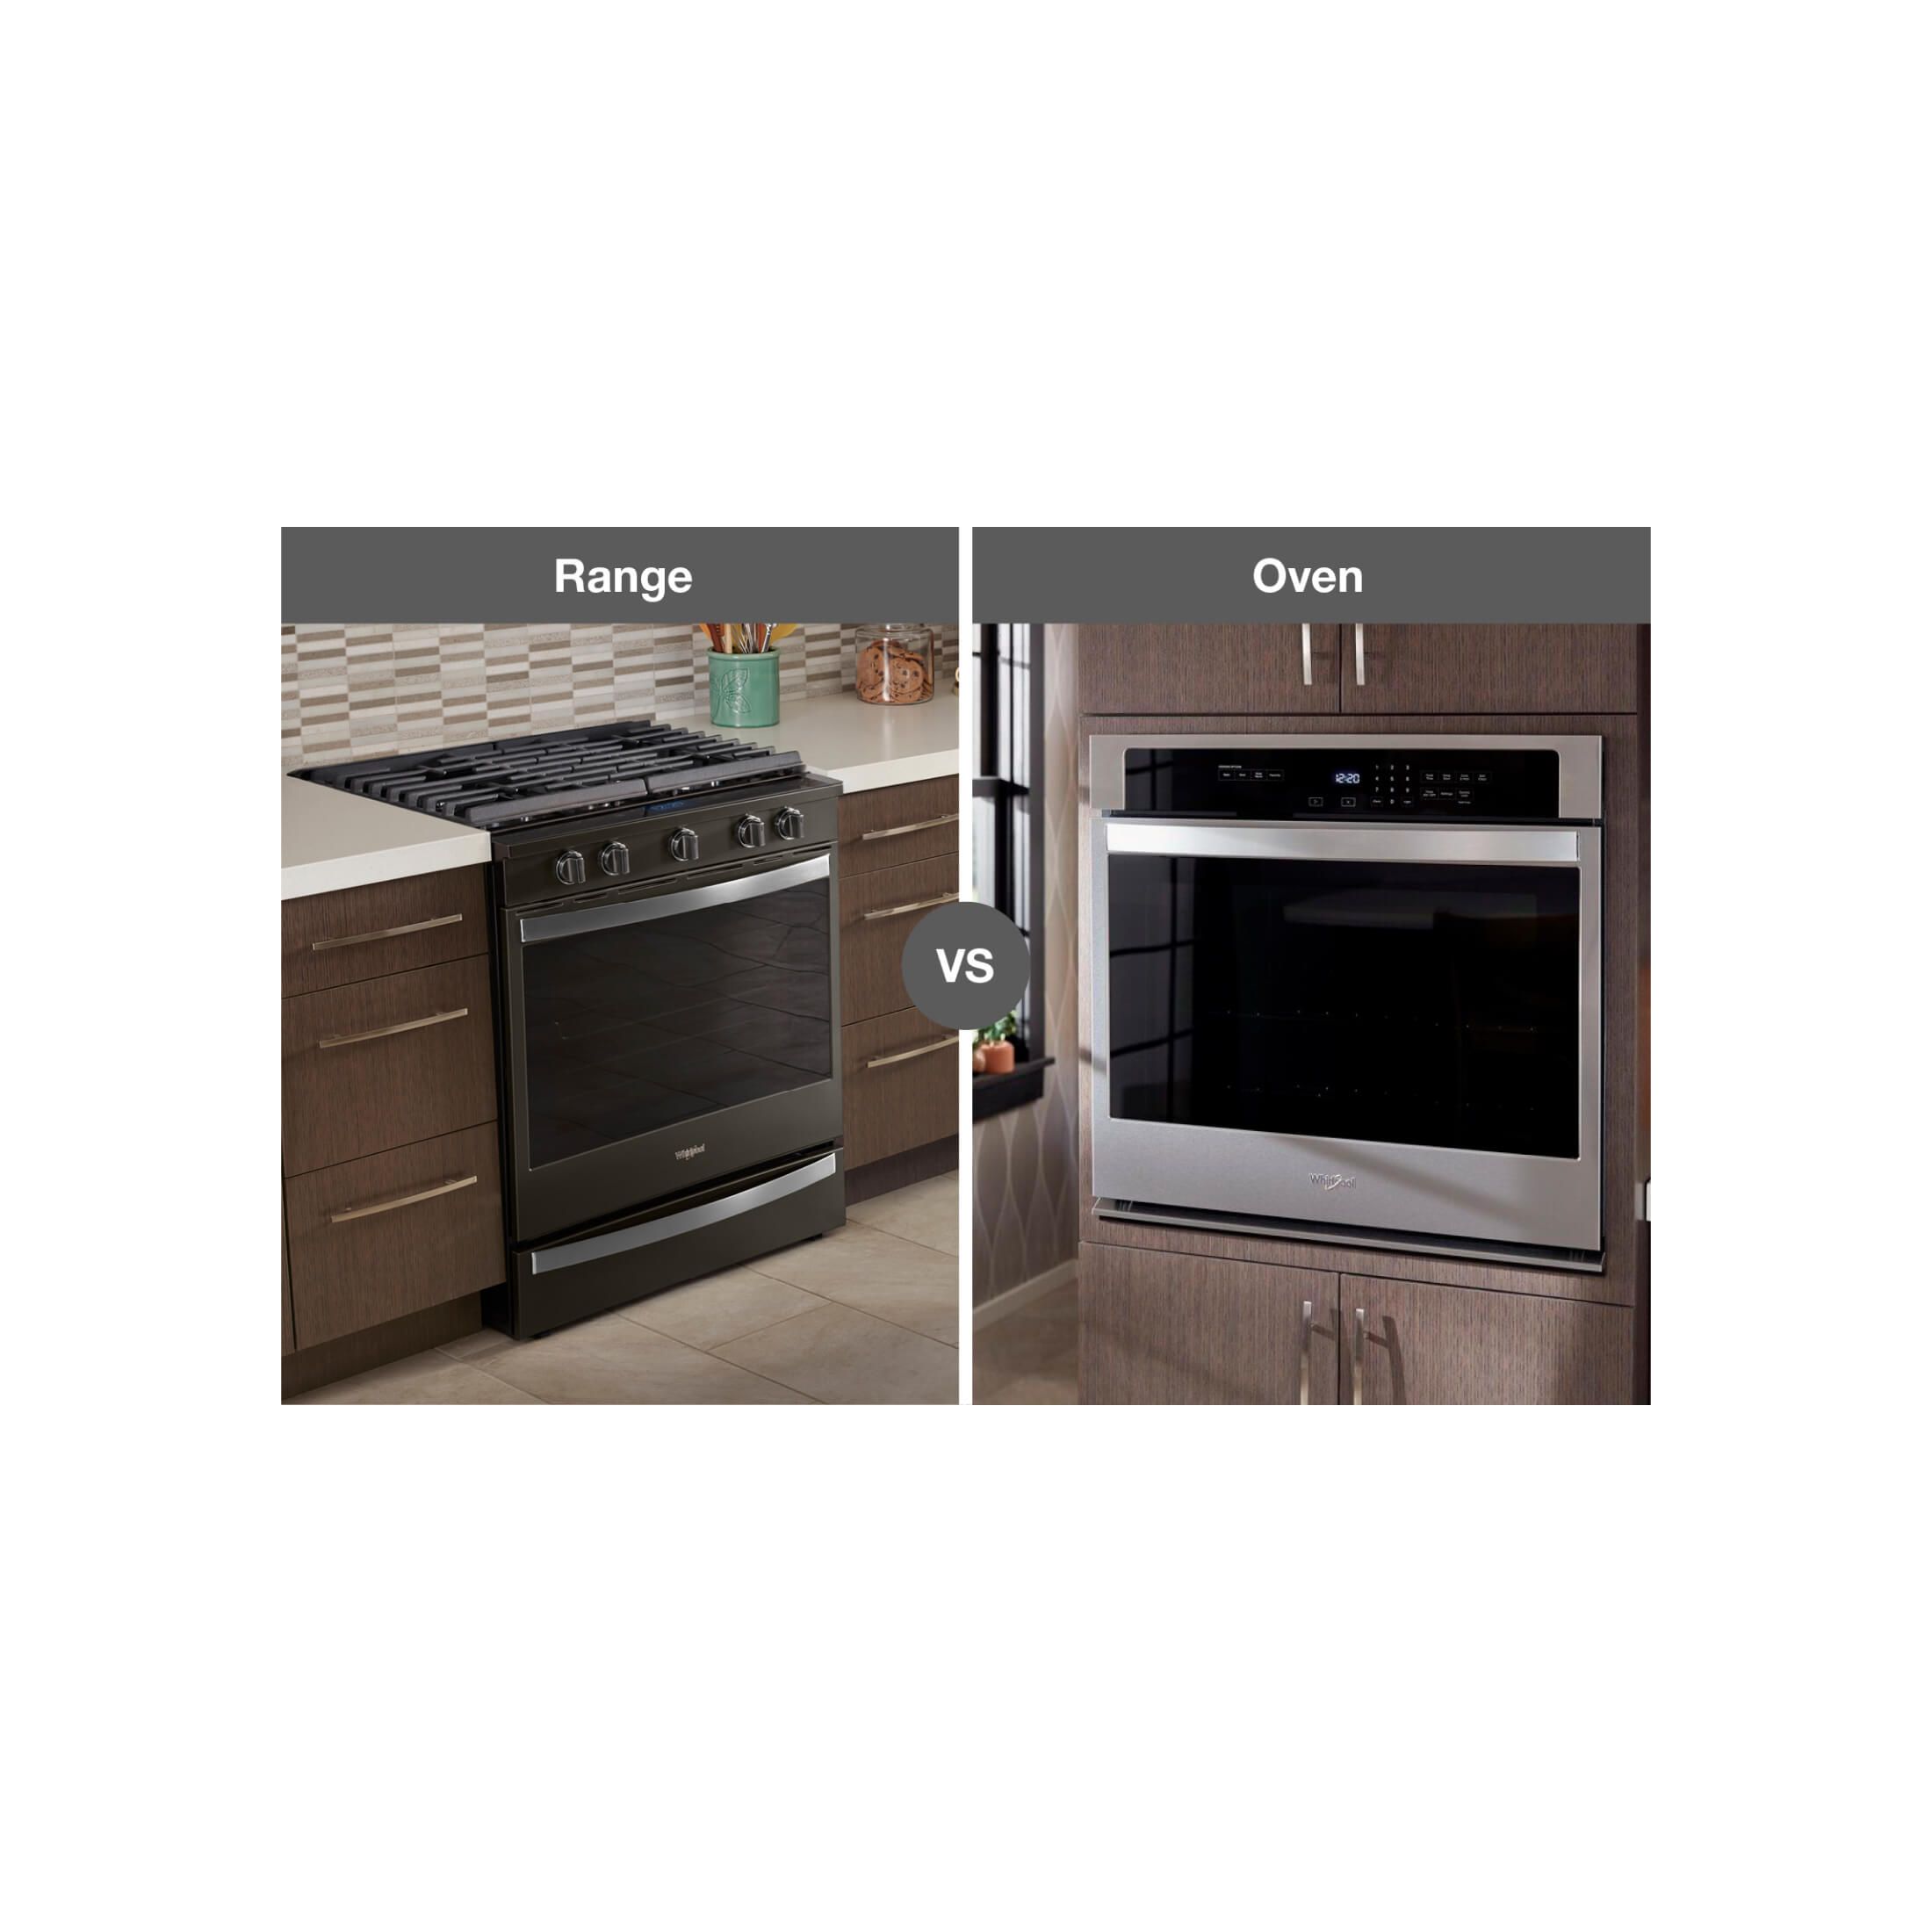 https://kitchenaid-h.assetsadobe.com/is/image/content/dam/business-unit/whirlpool/en-us/marketing-content/site-assets/page-content/whirlpool-aem-2/images/range-vs-stove-vs-oven/range-v-stove-v-oven-IMG2.jpg?fit=constrain&fmt=jpg&hei=2200&resMode=sharp2&utc=2021-08-09T18:36:08Z&wid=2200